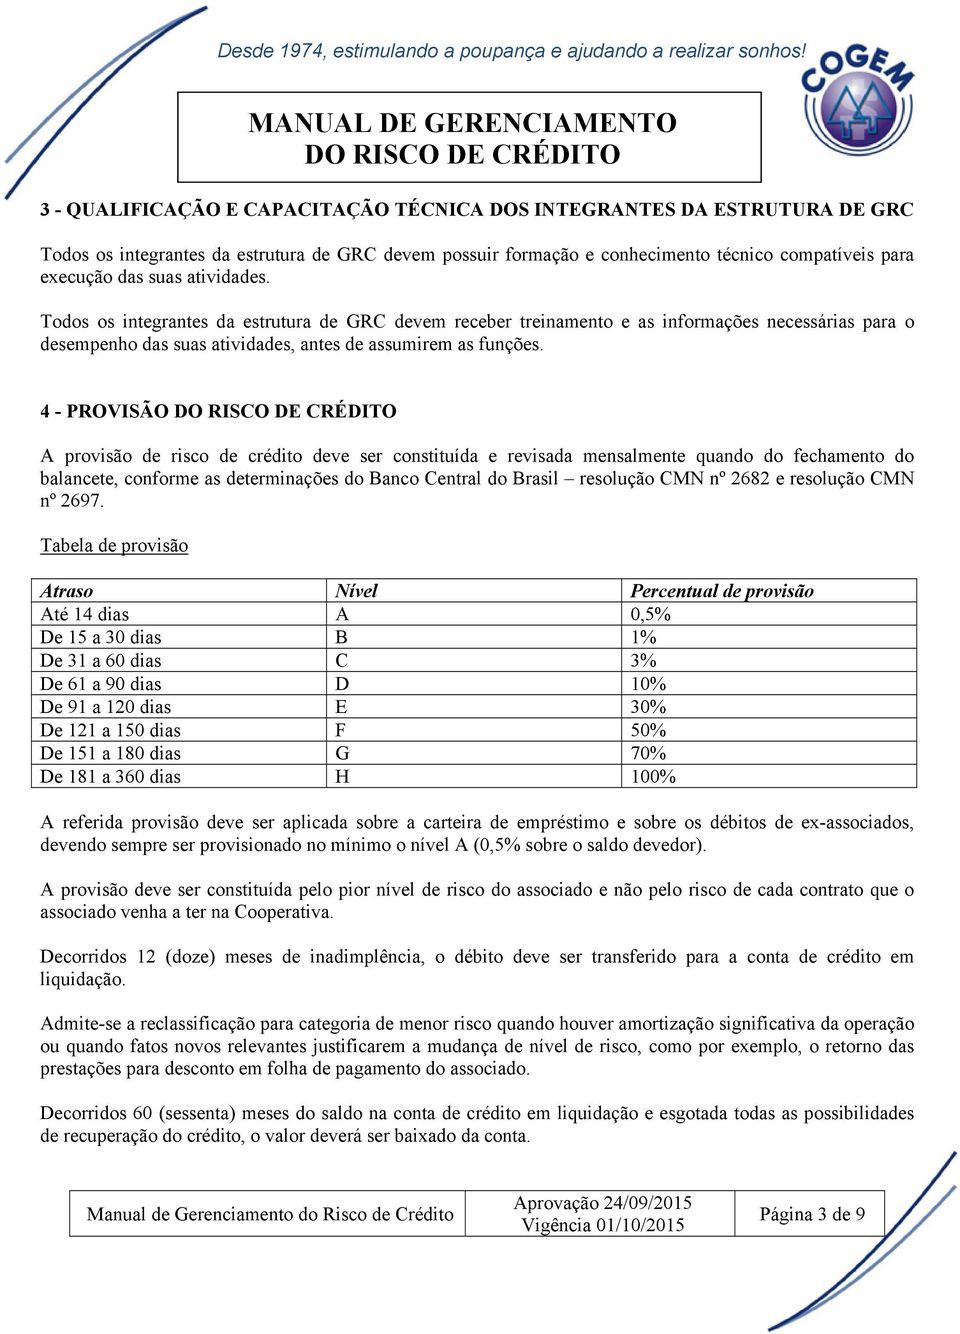 4 - PROVISÃO A provisão de risco de crédito deve ser constituída e revisada mensalmente quando do fechamento do balancete, conforme as determinações do Banco Central do Brasil resolução CMN nº 2682 e